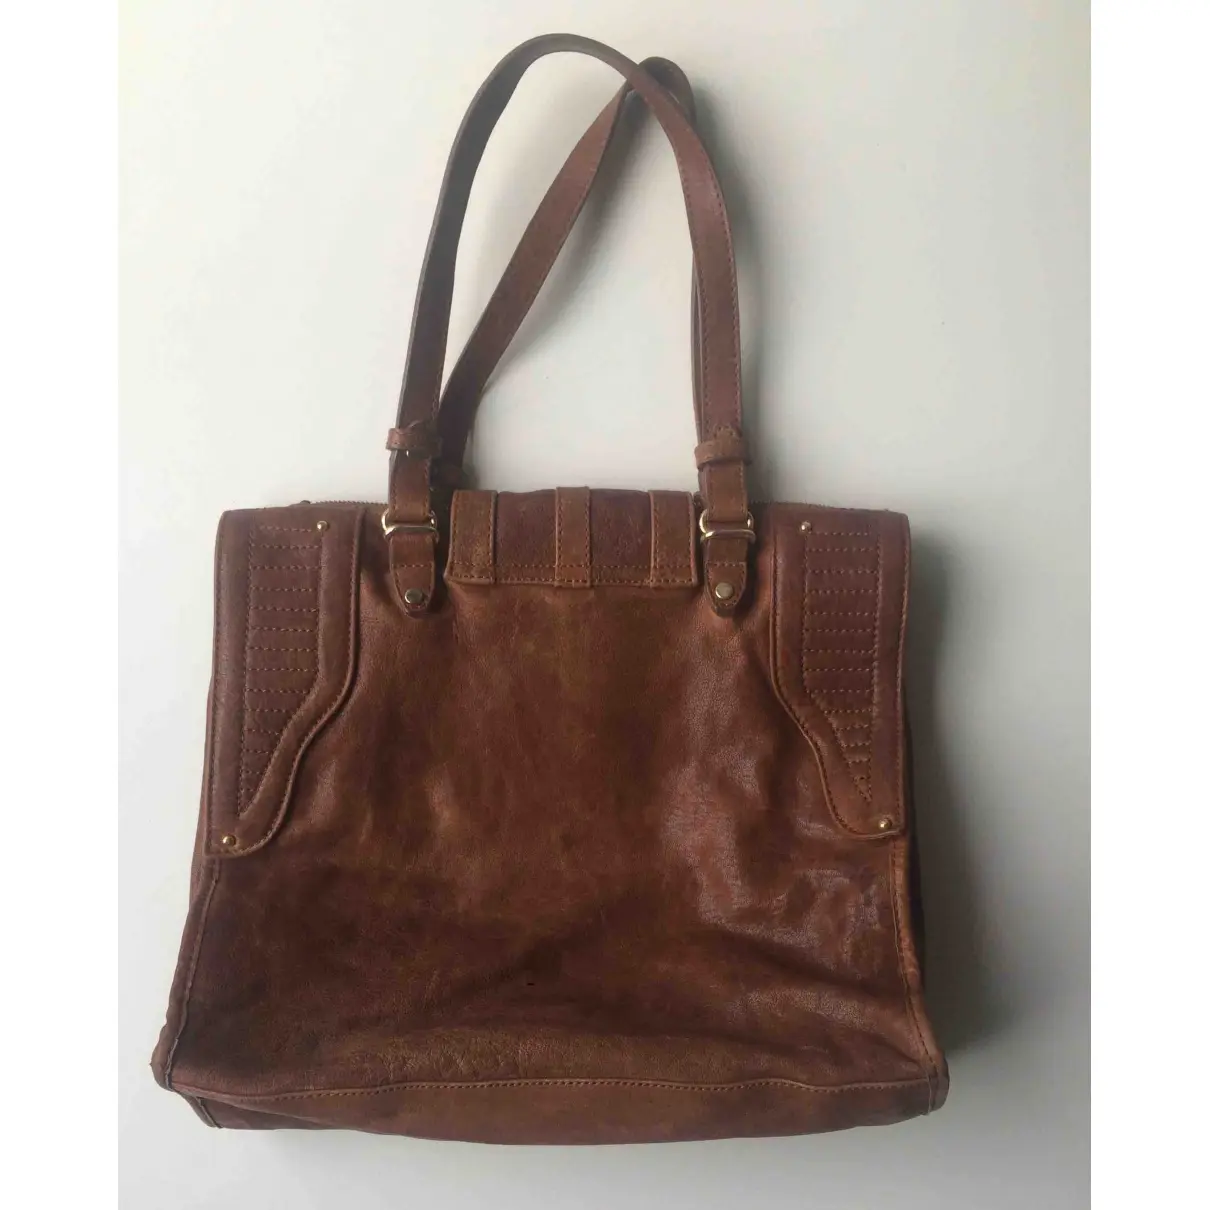 Velvetine Leather handbag for sale